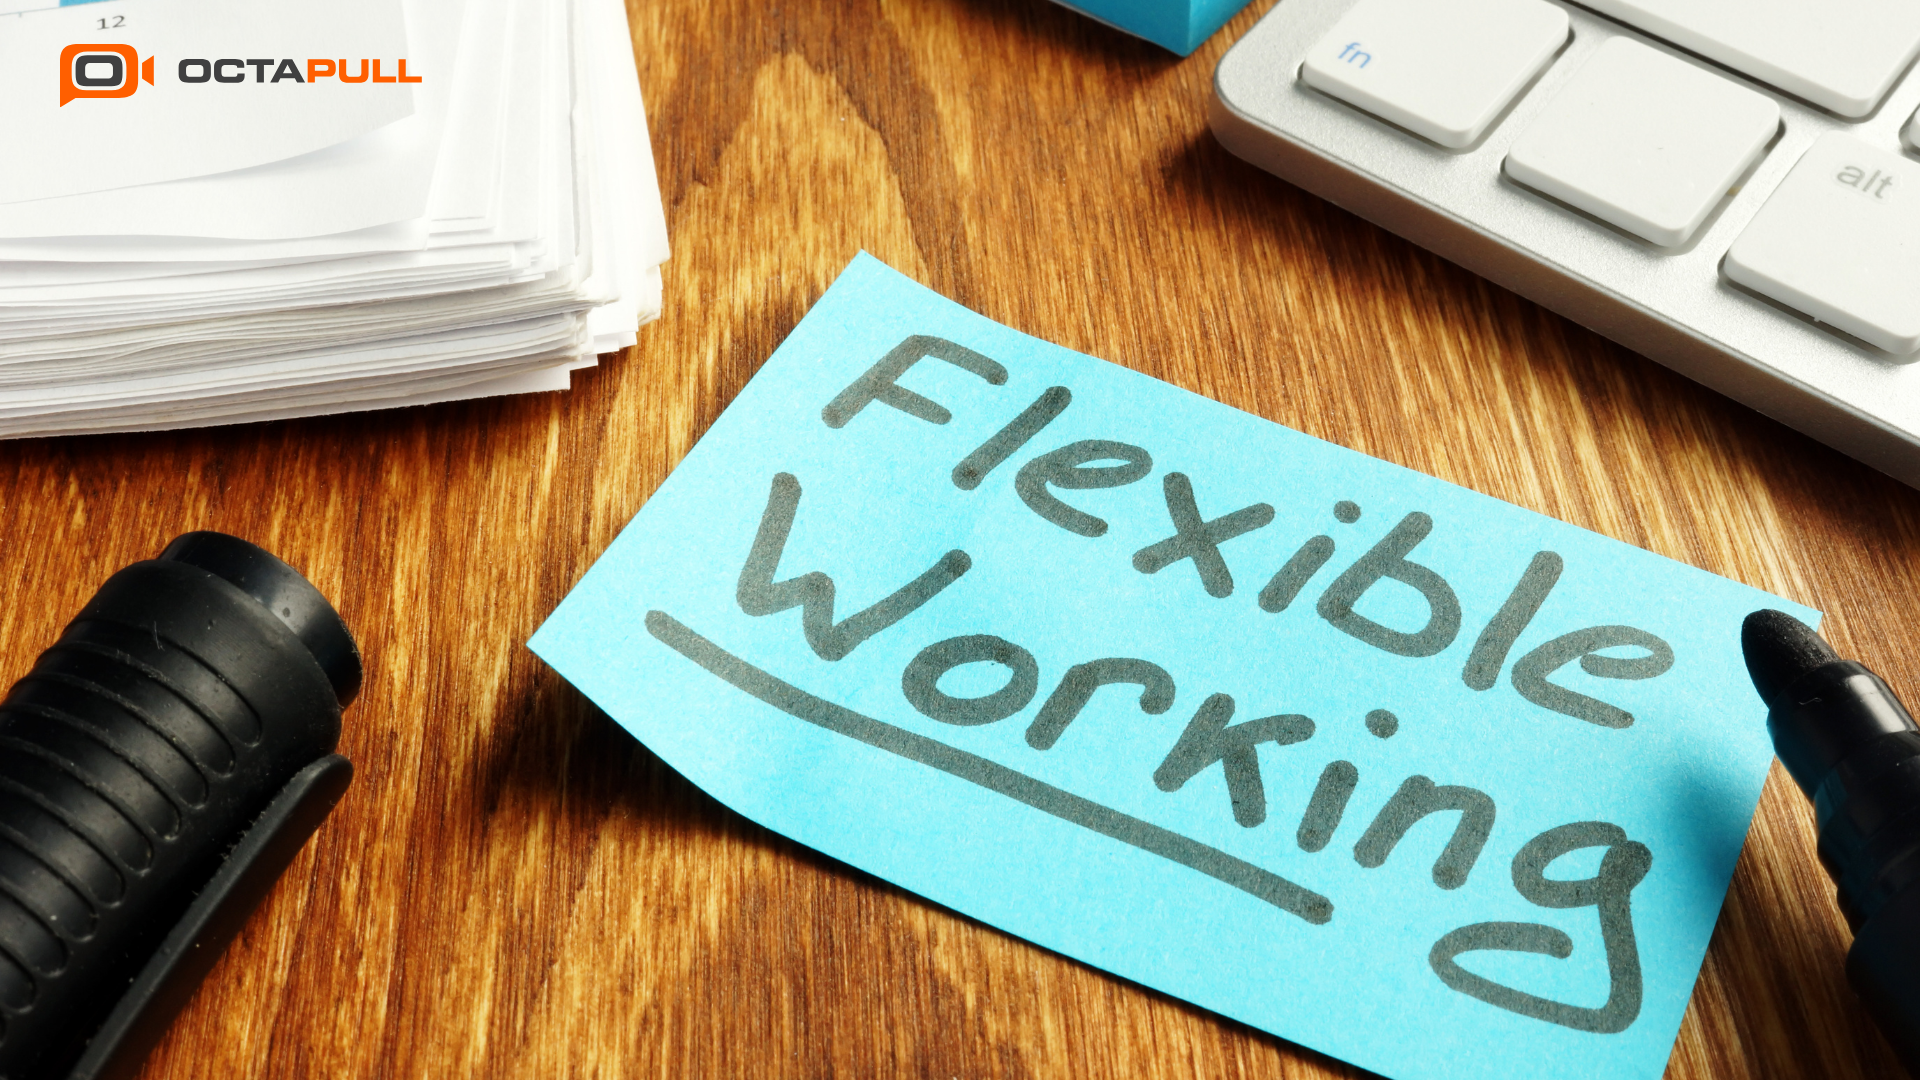 Esnek Çalışma Saatleri Uygulaması (Flexible Working Hours) Nedir